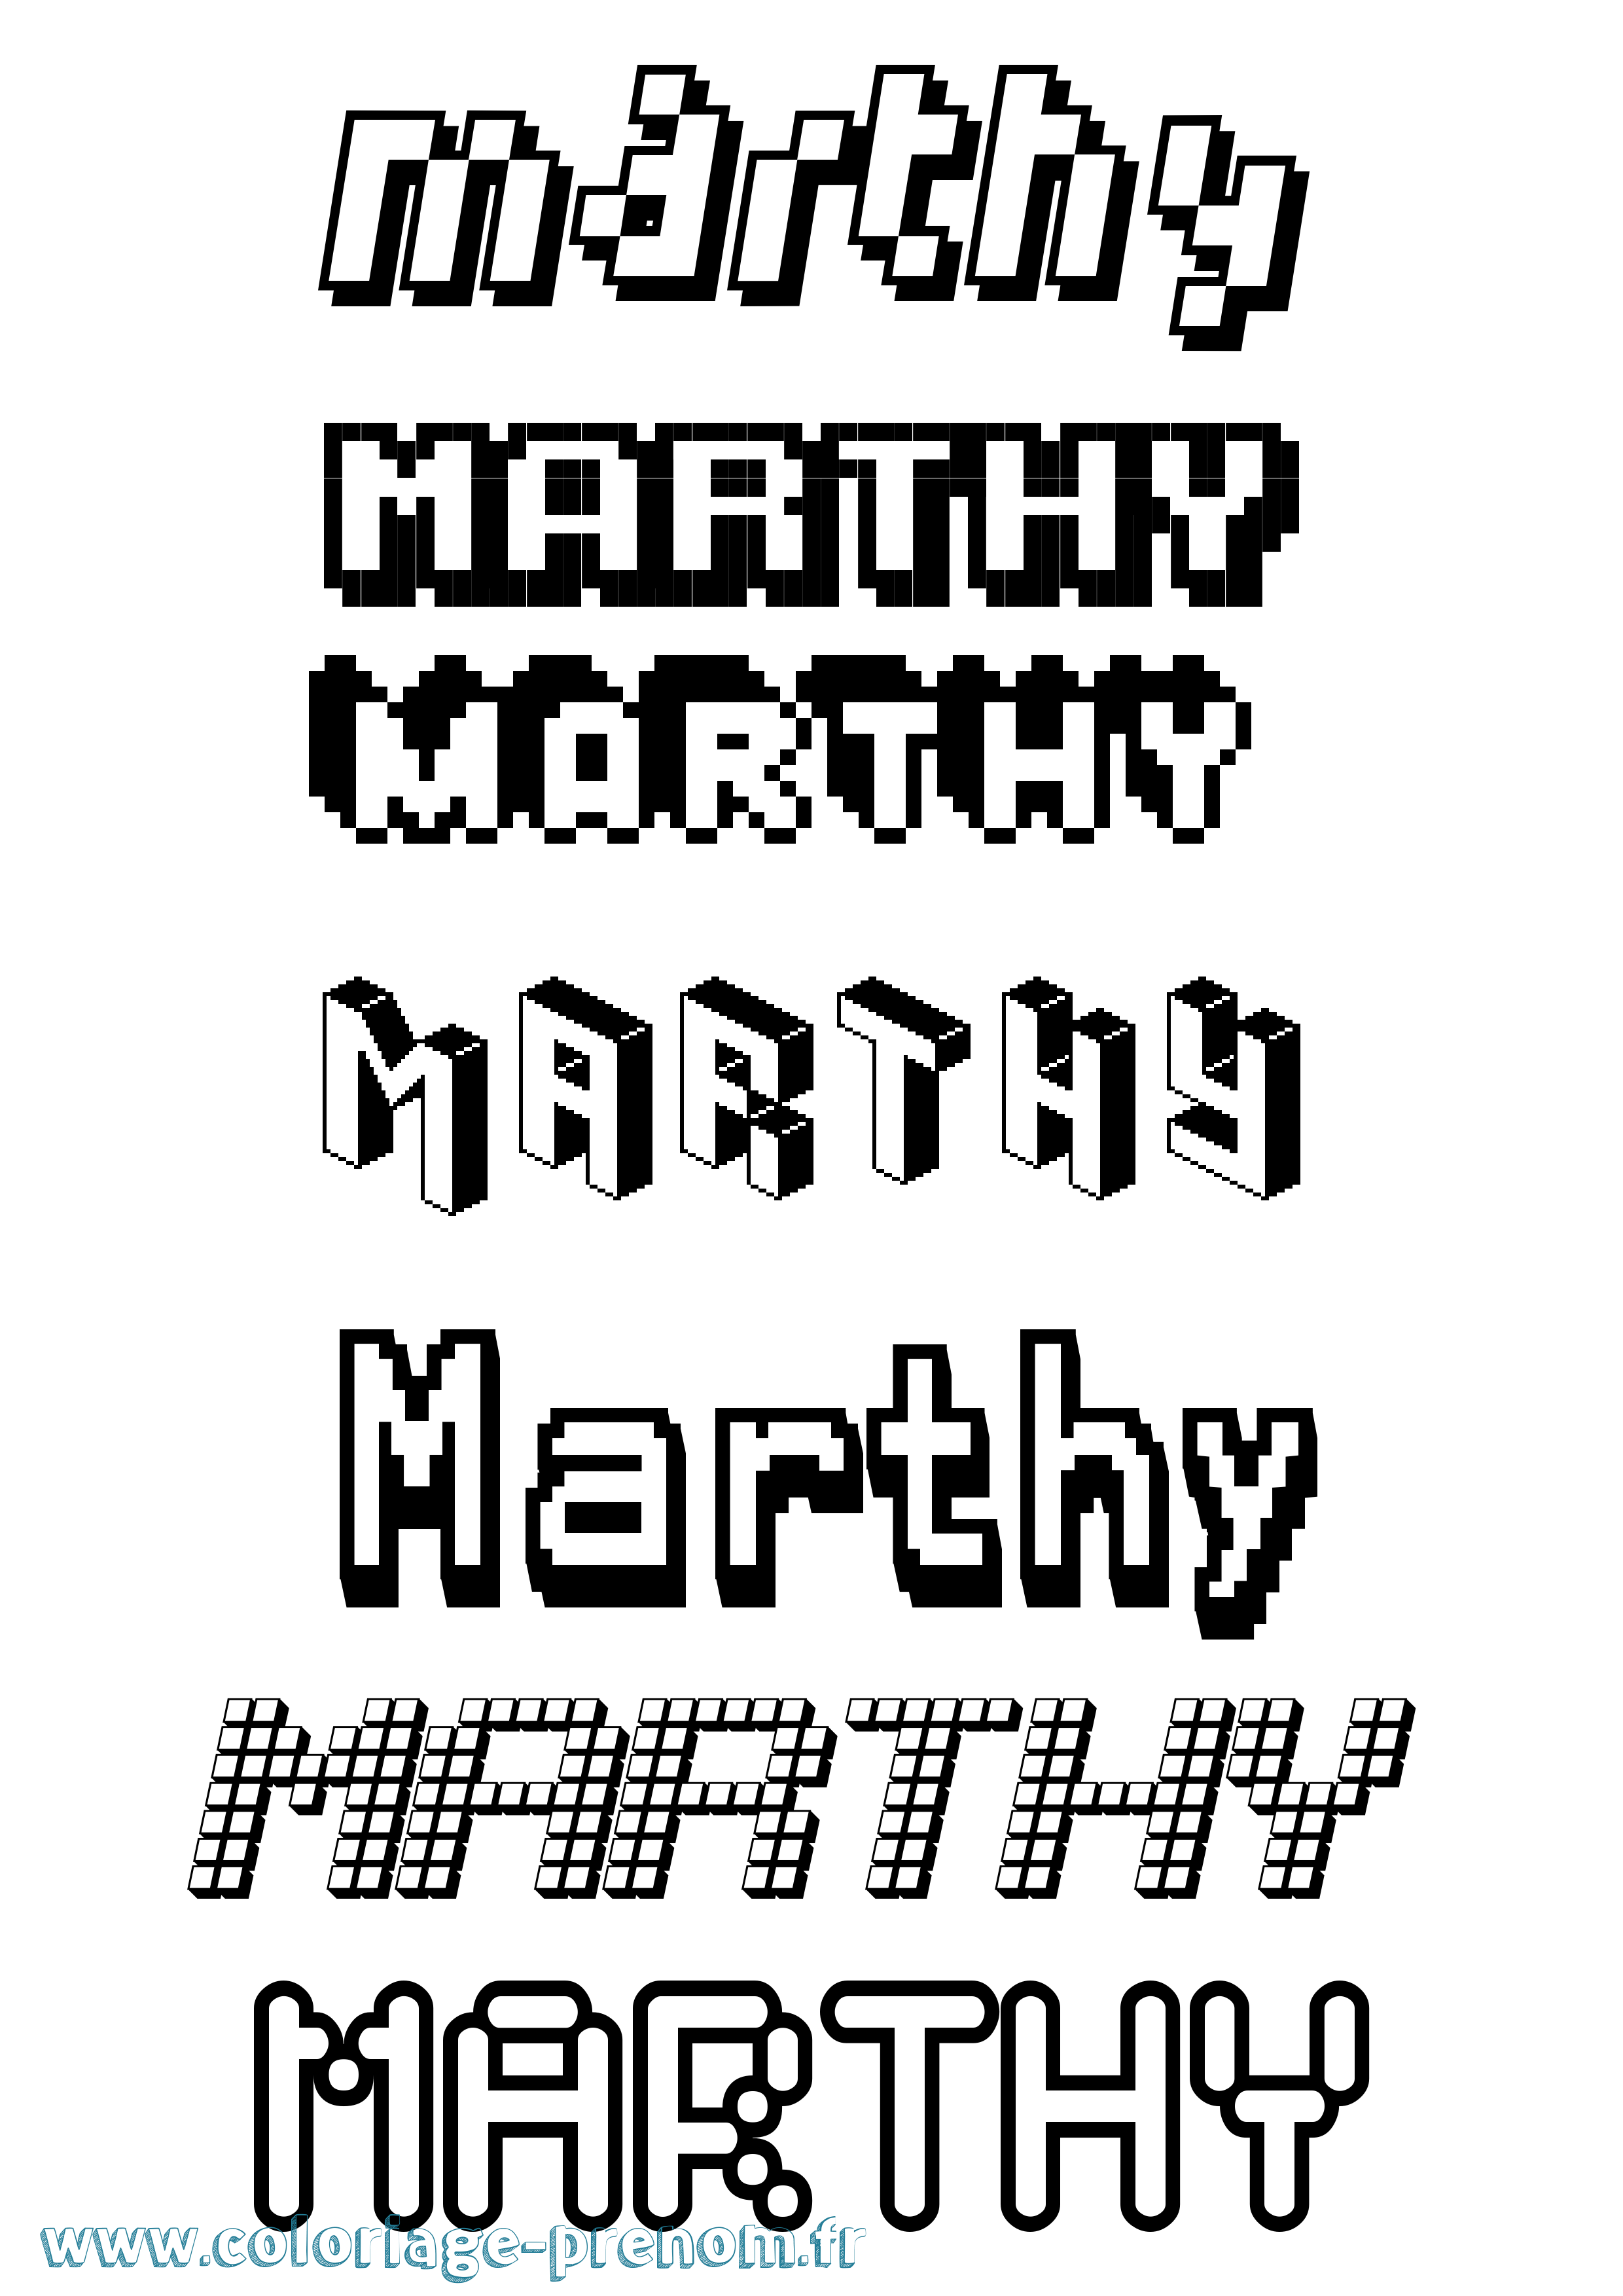 Coloriage prénom Marthy Pixel